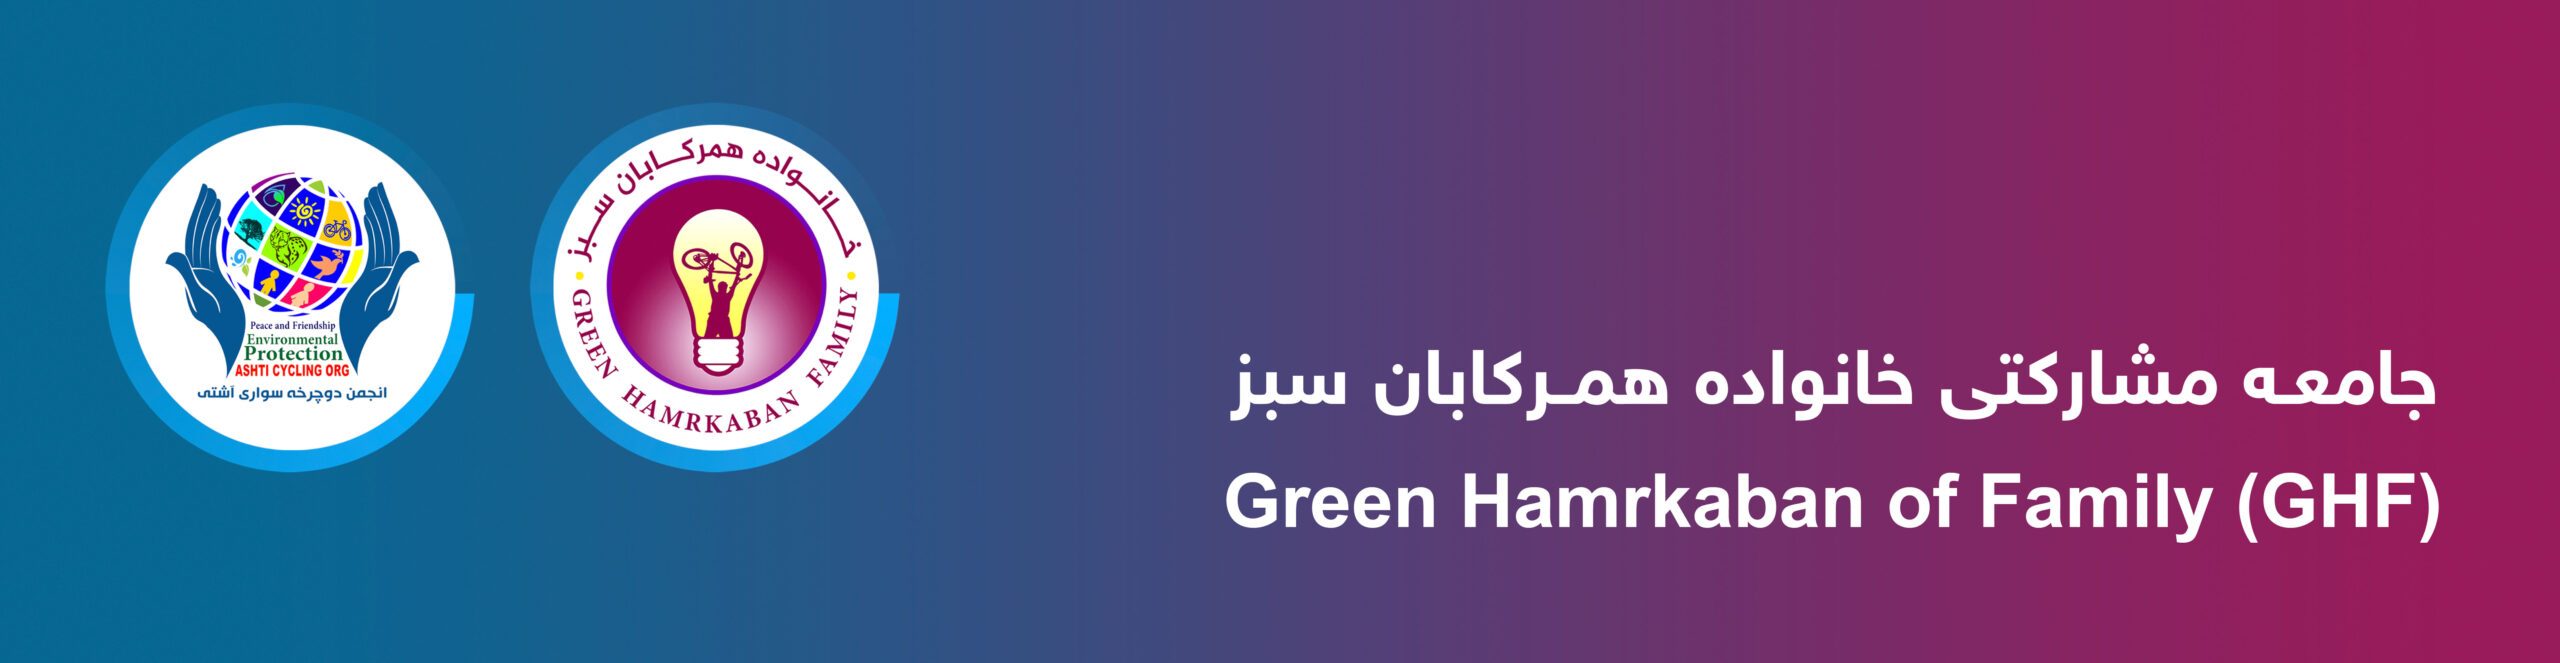 جامعه مشارکتی خانواده همرکابان سبز GHF